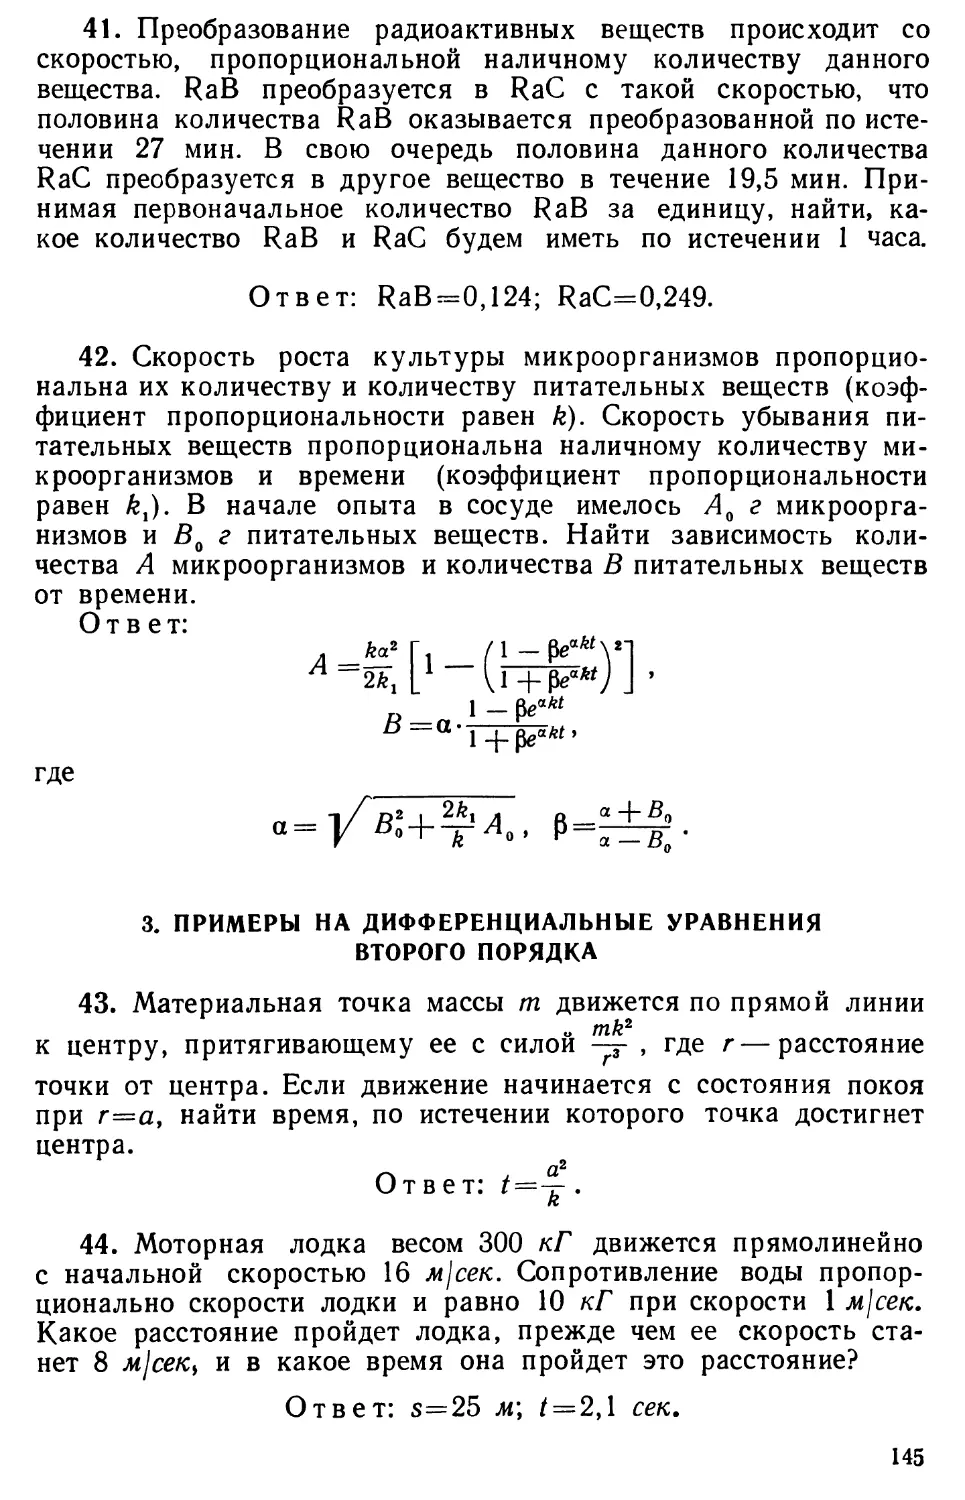 3. Примеры на дифференциальные уравнения второго порядка